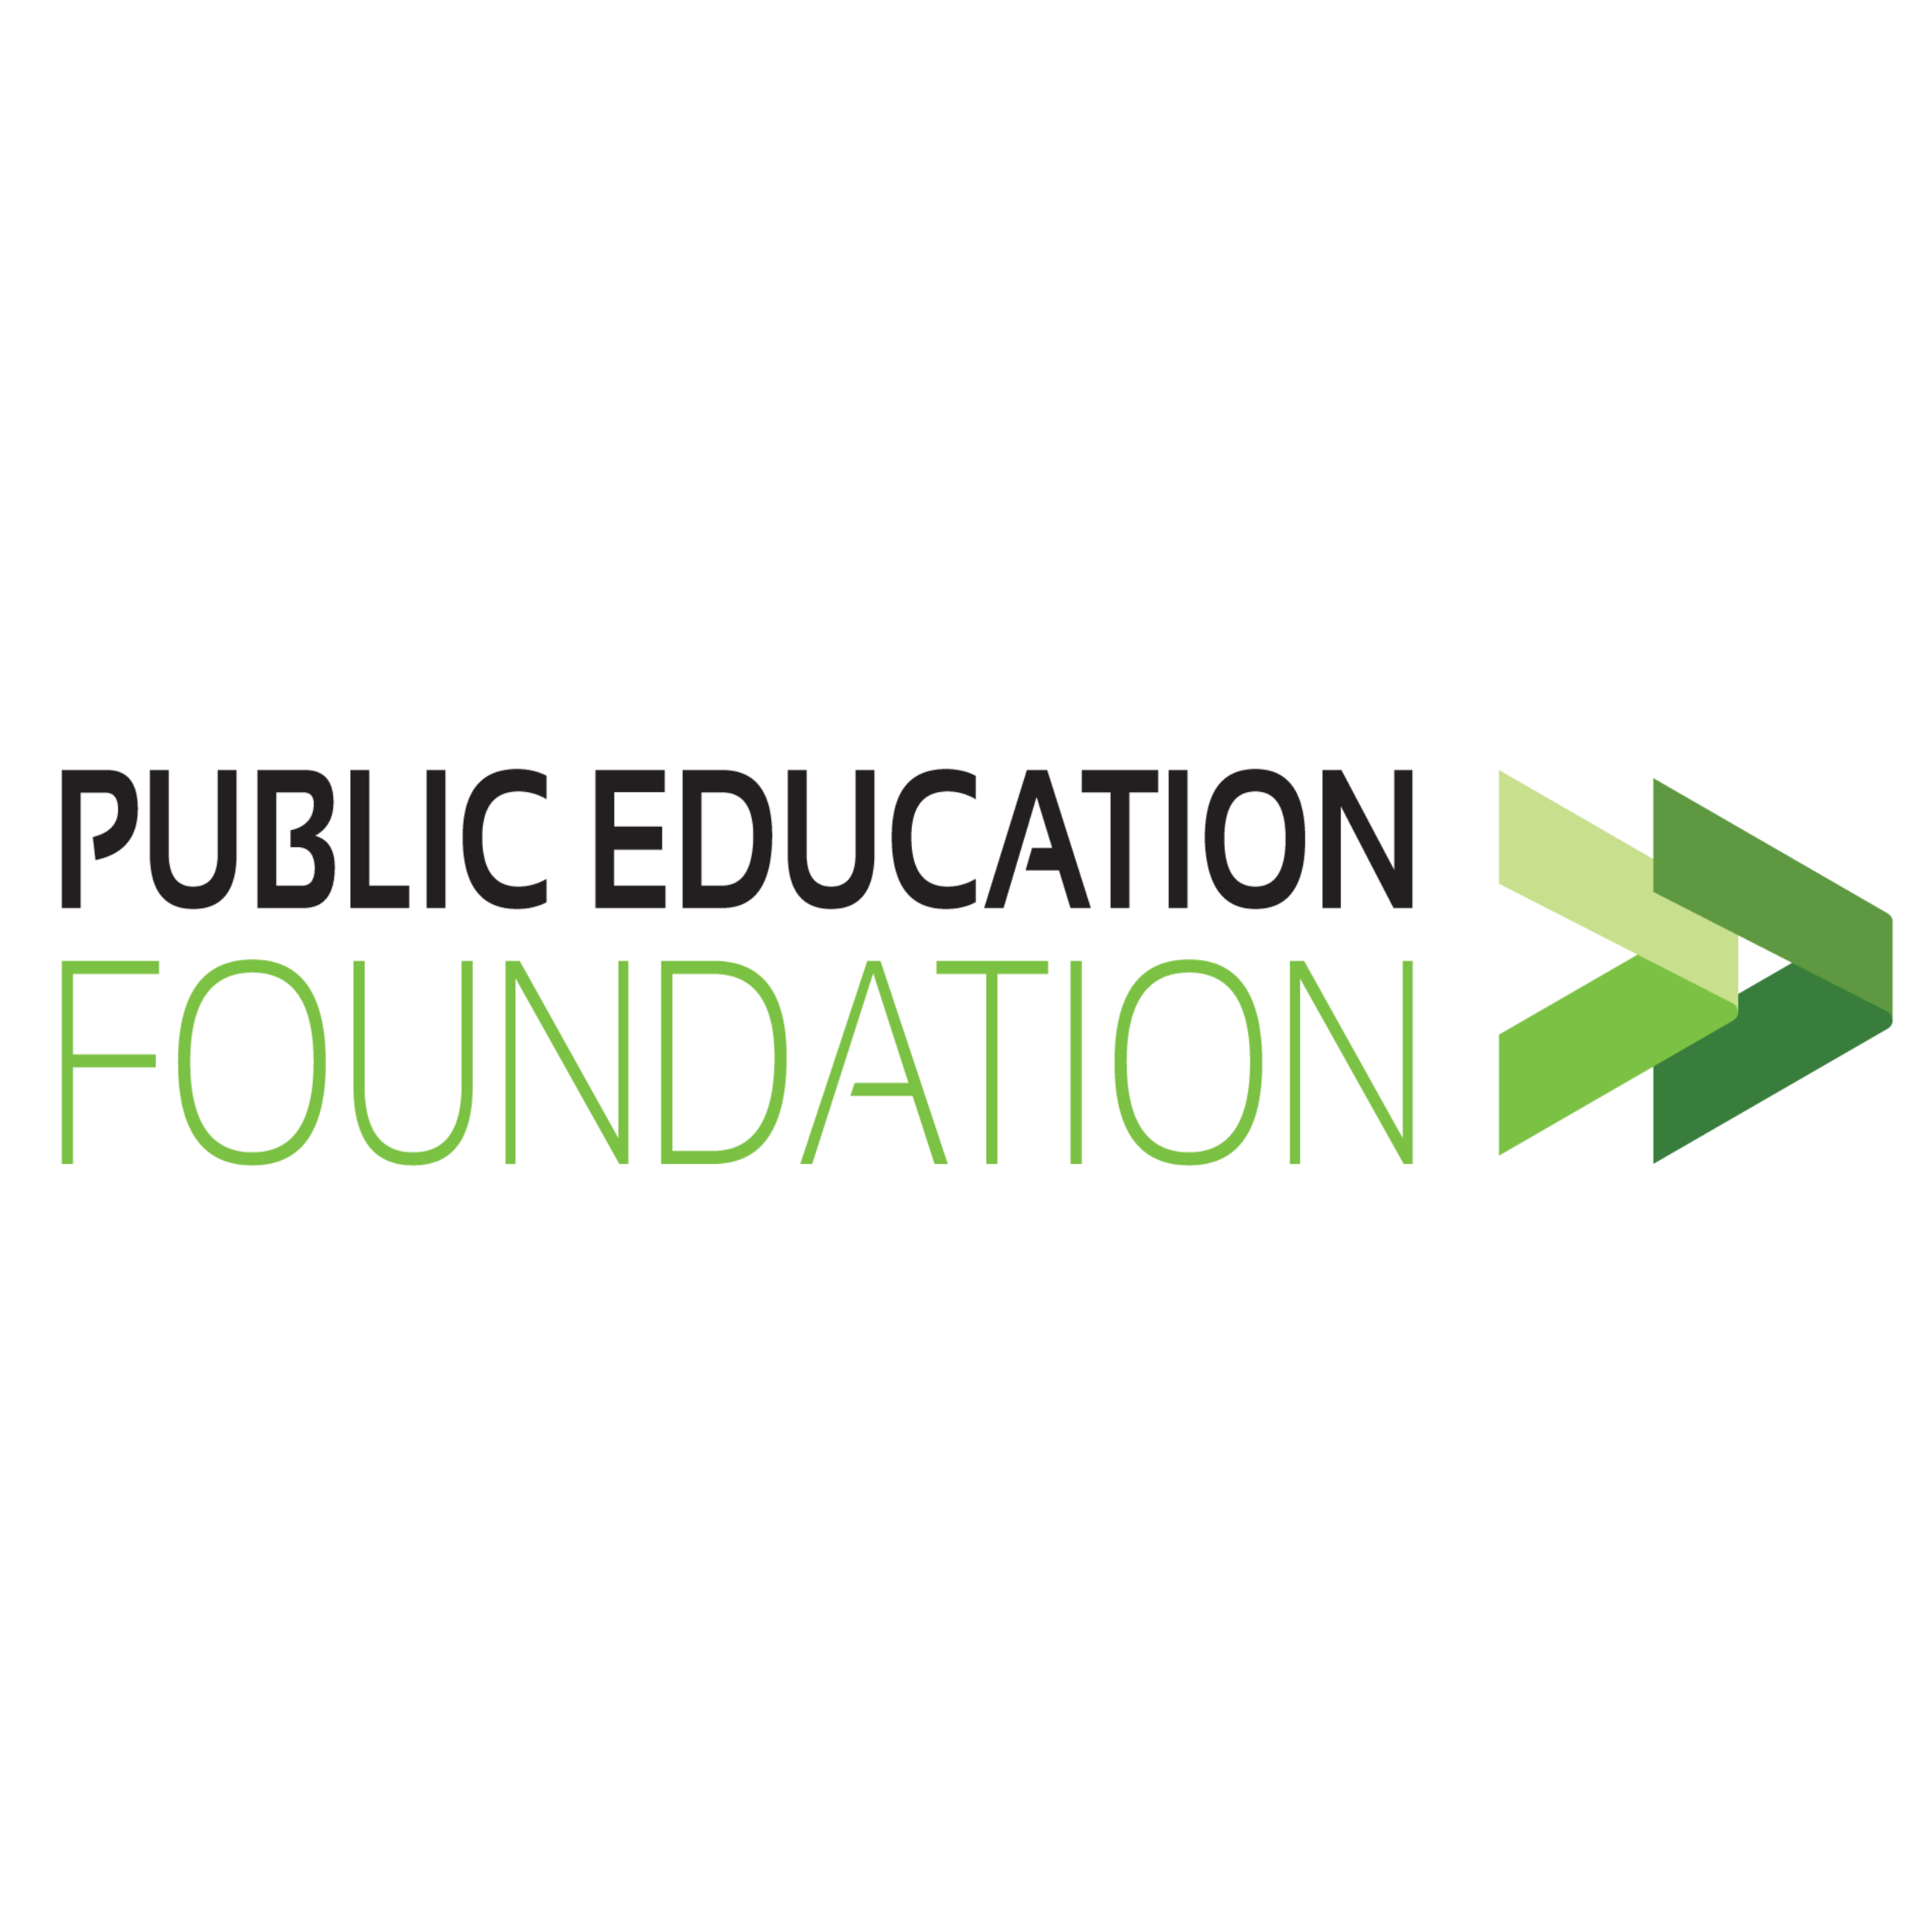 Public Education Foundation : Brand Short Description Type Here.